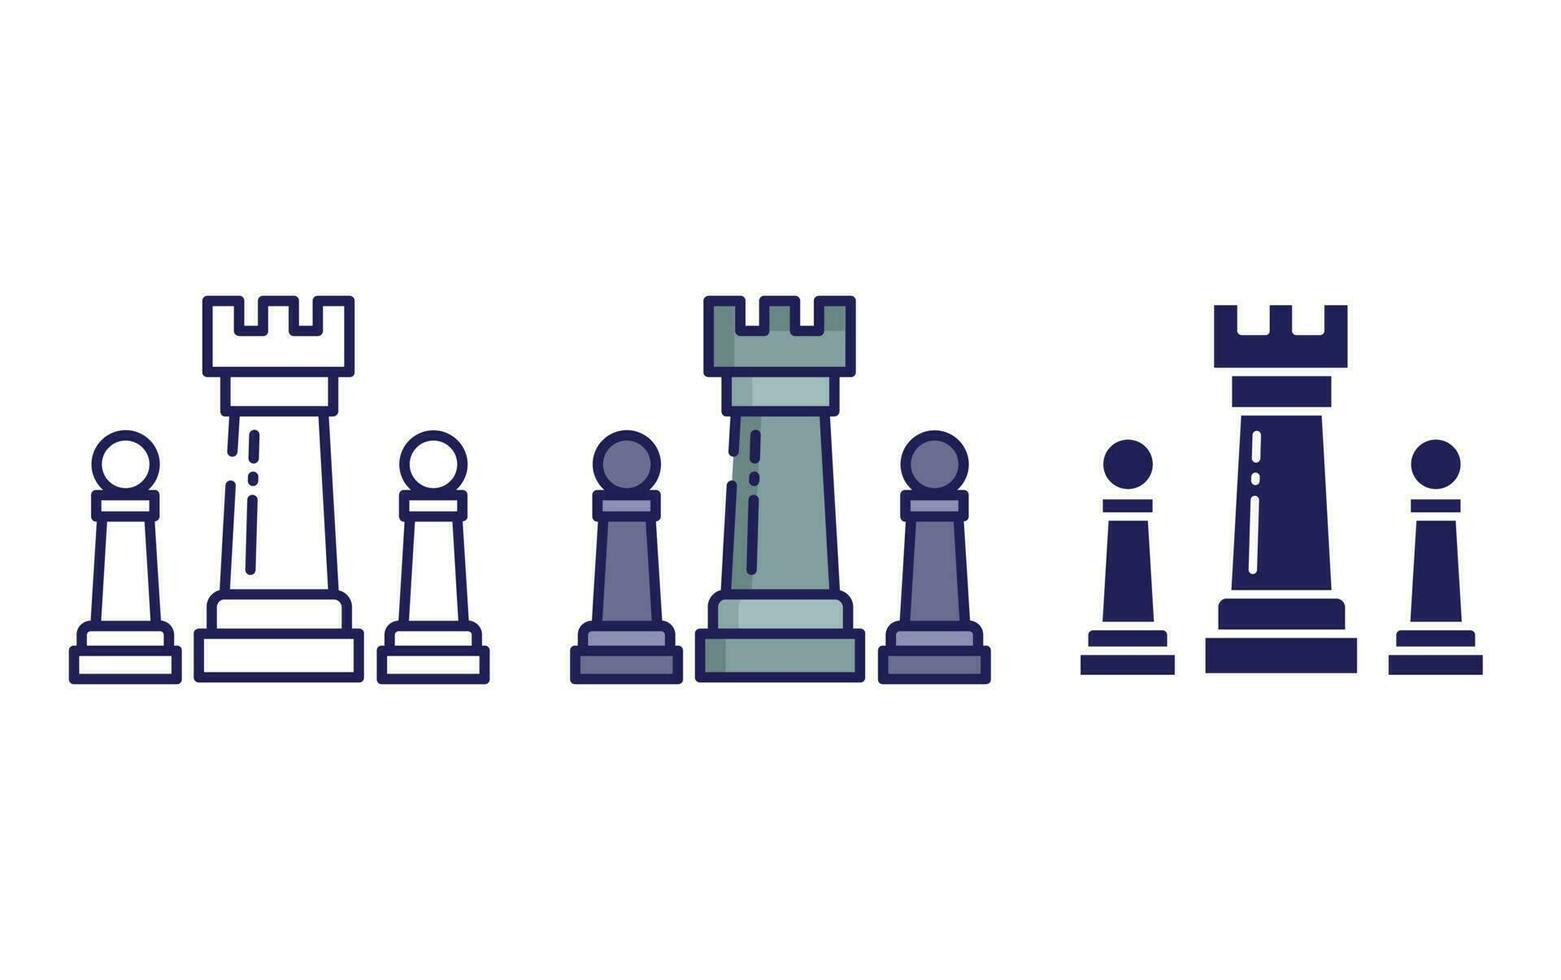 icono de vector de ajedrez